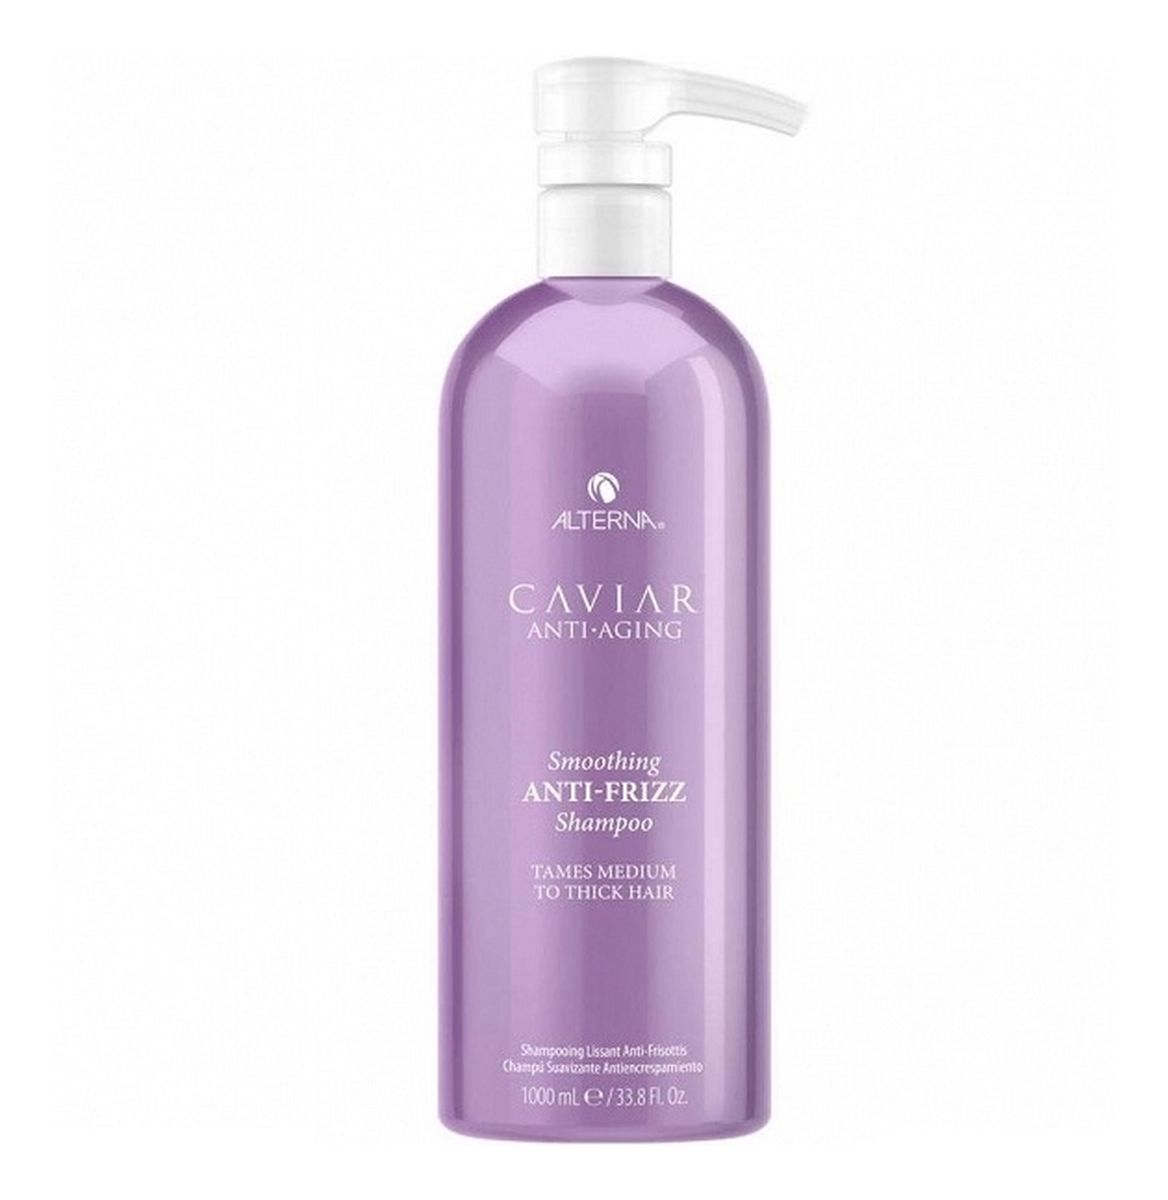 Caviar anti-aging smoothing anti-frizz shampoo szampon do włosów przeciw puszeniu się